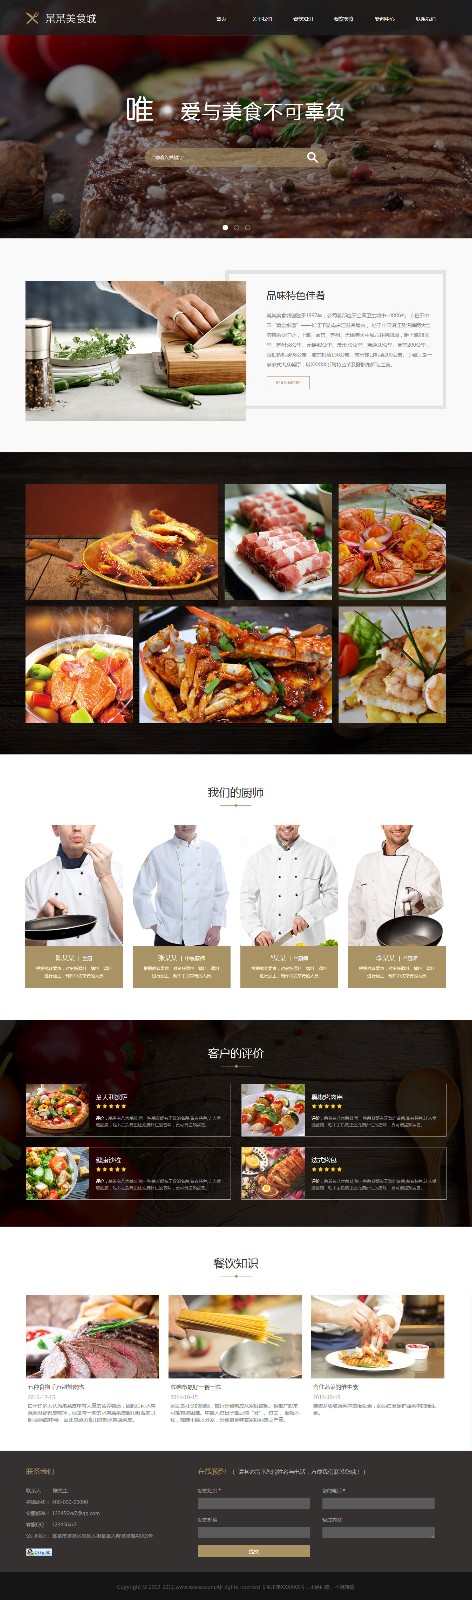 餐饮网站模板-restaurant-1041389